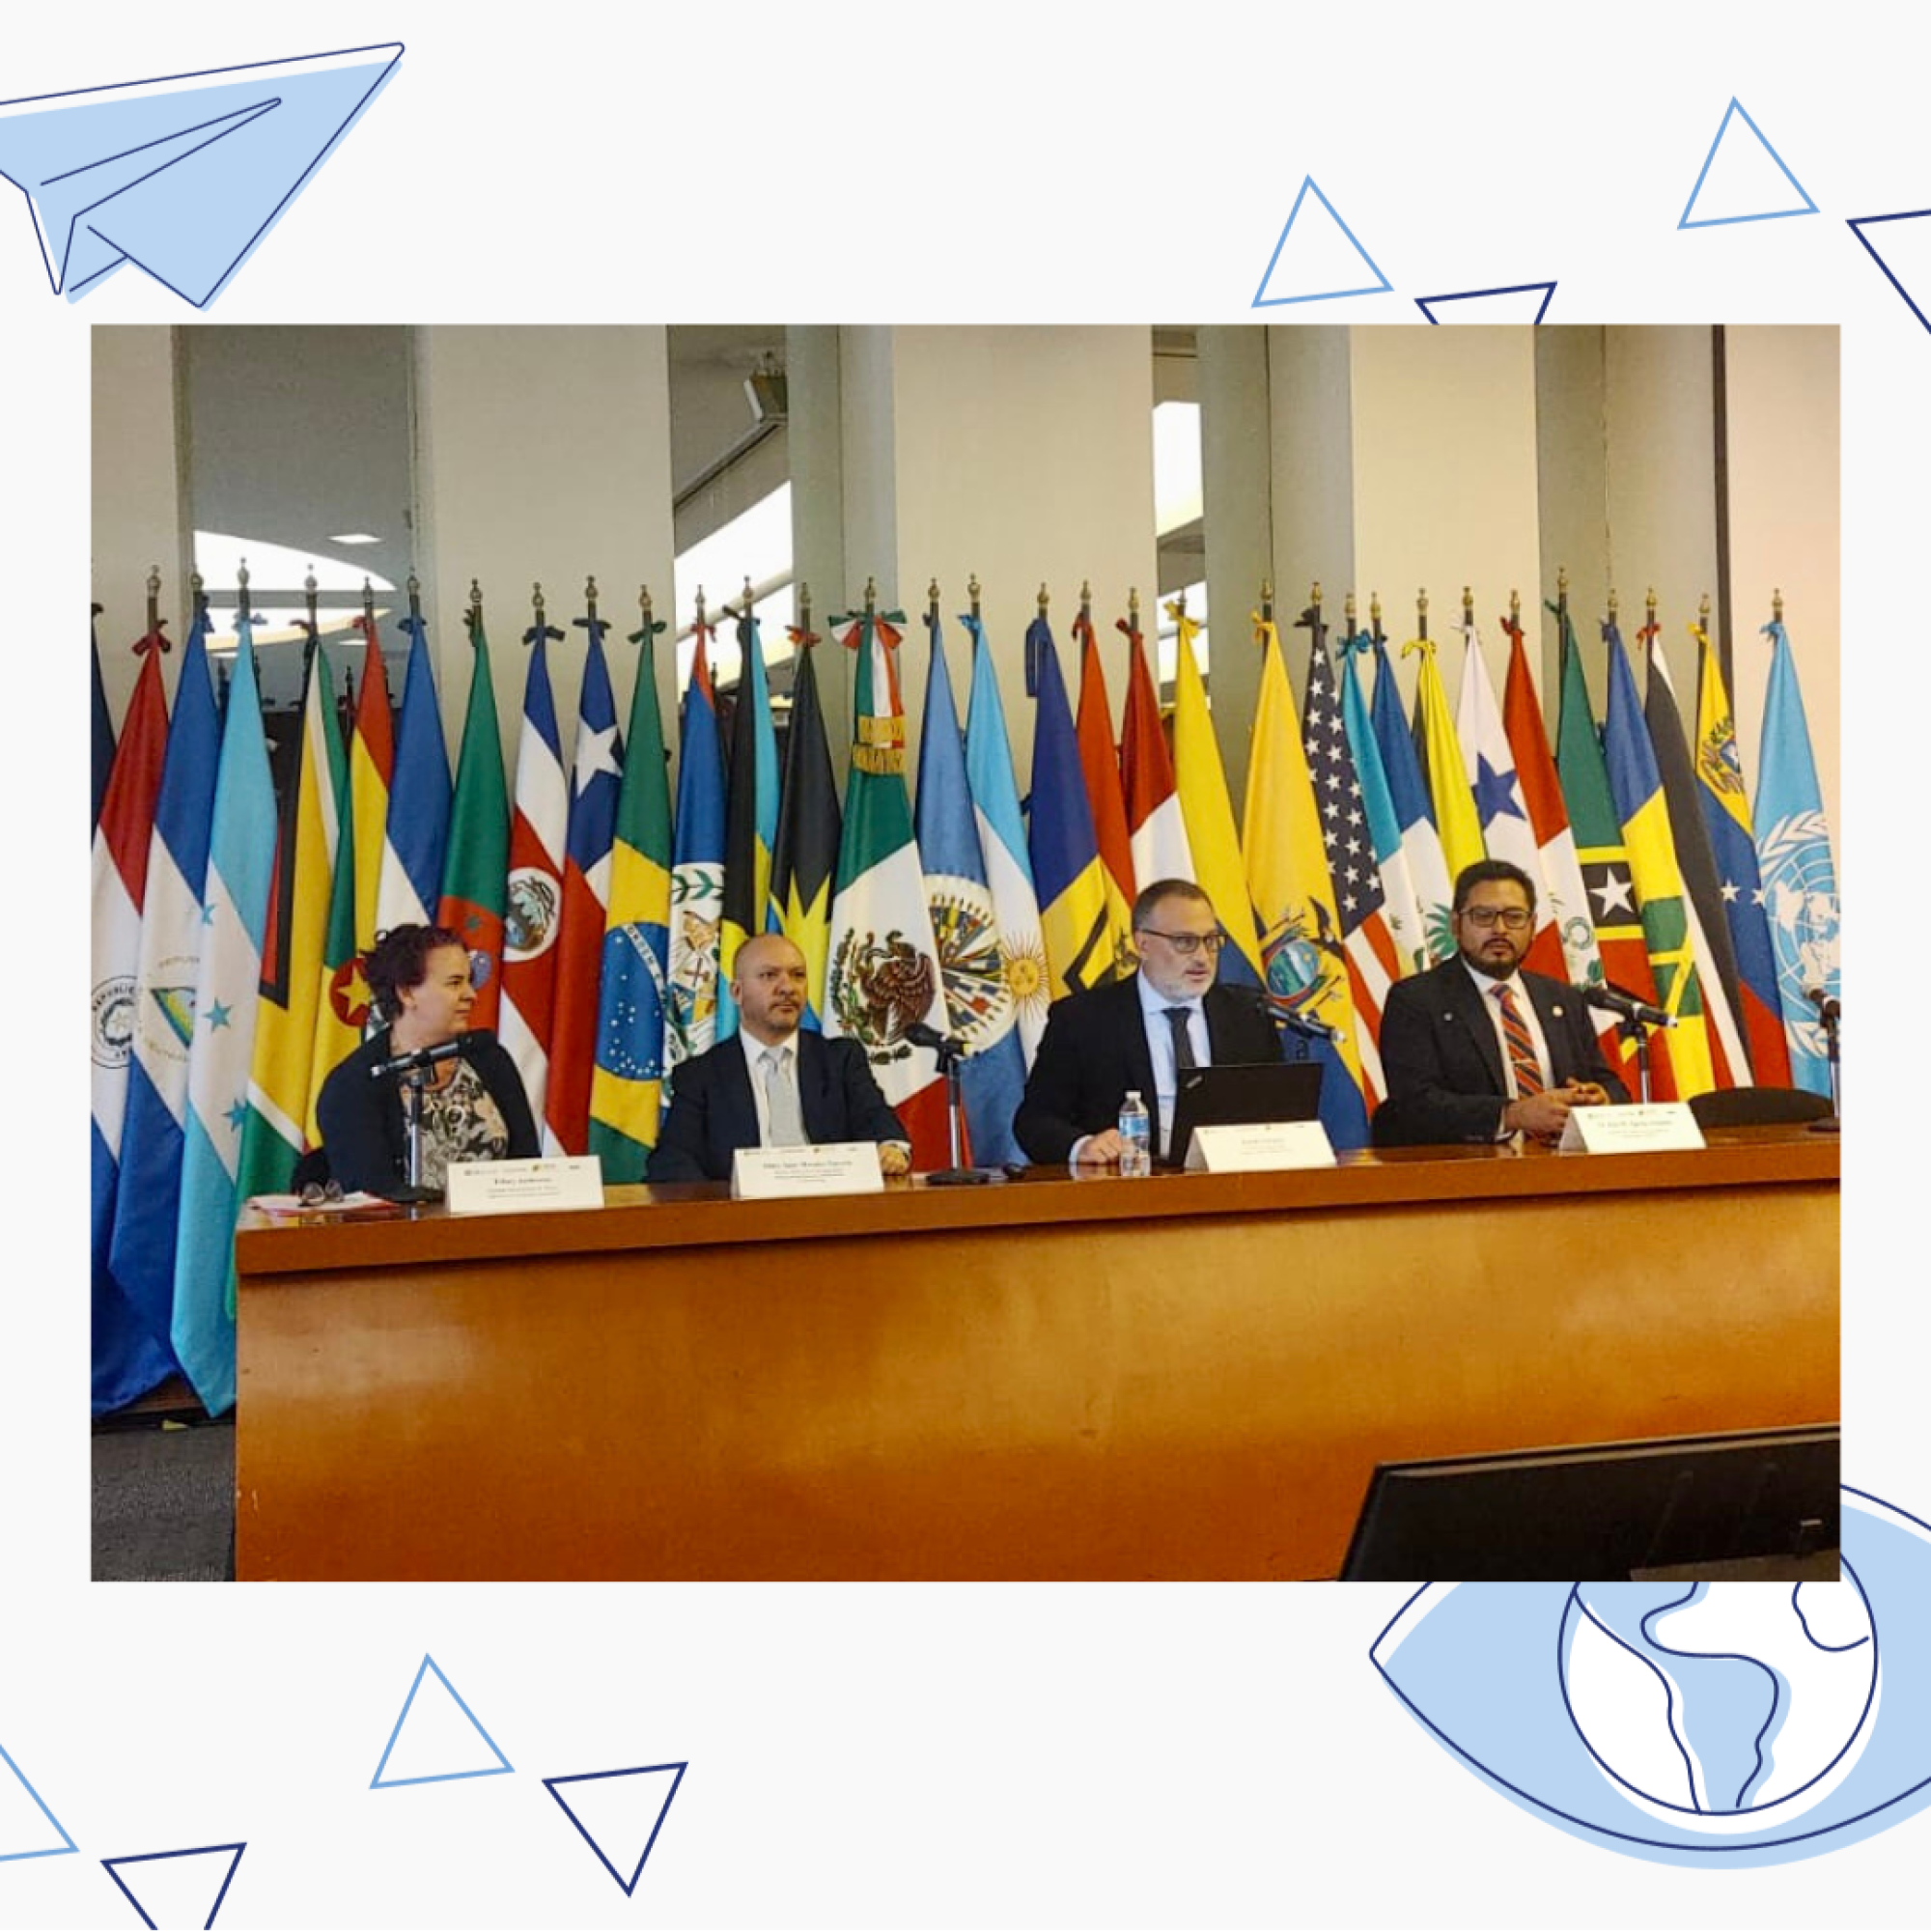 CJL realiza painel sobre terrorismo e segurança cibernética - Fundada em 1948, a CONIB – Confederação Israelita do Brasil é o órgão de representação e coordenação política da comunidade judaica brasileira. 